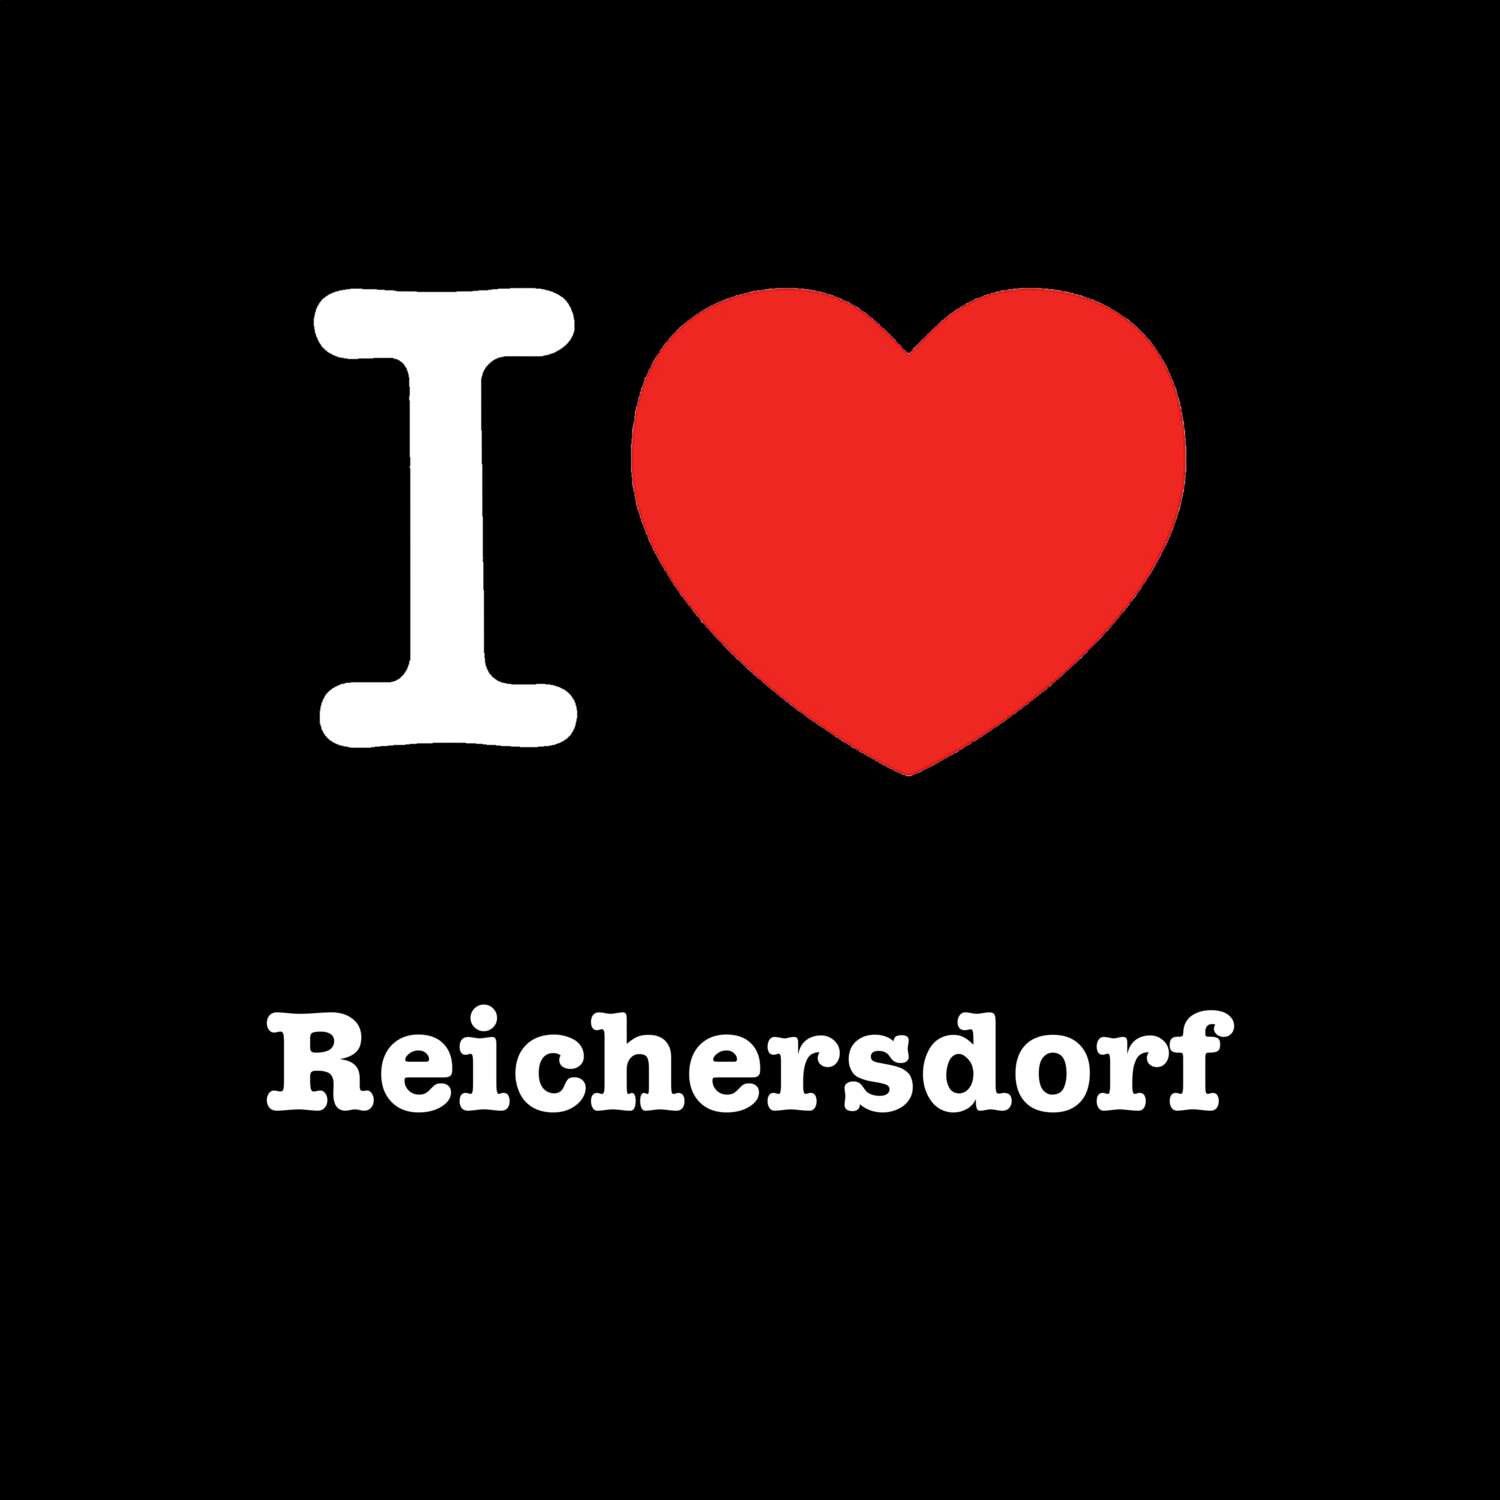 Reichersdorf T-Shirt »I love«